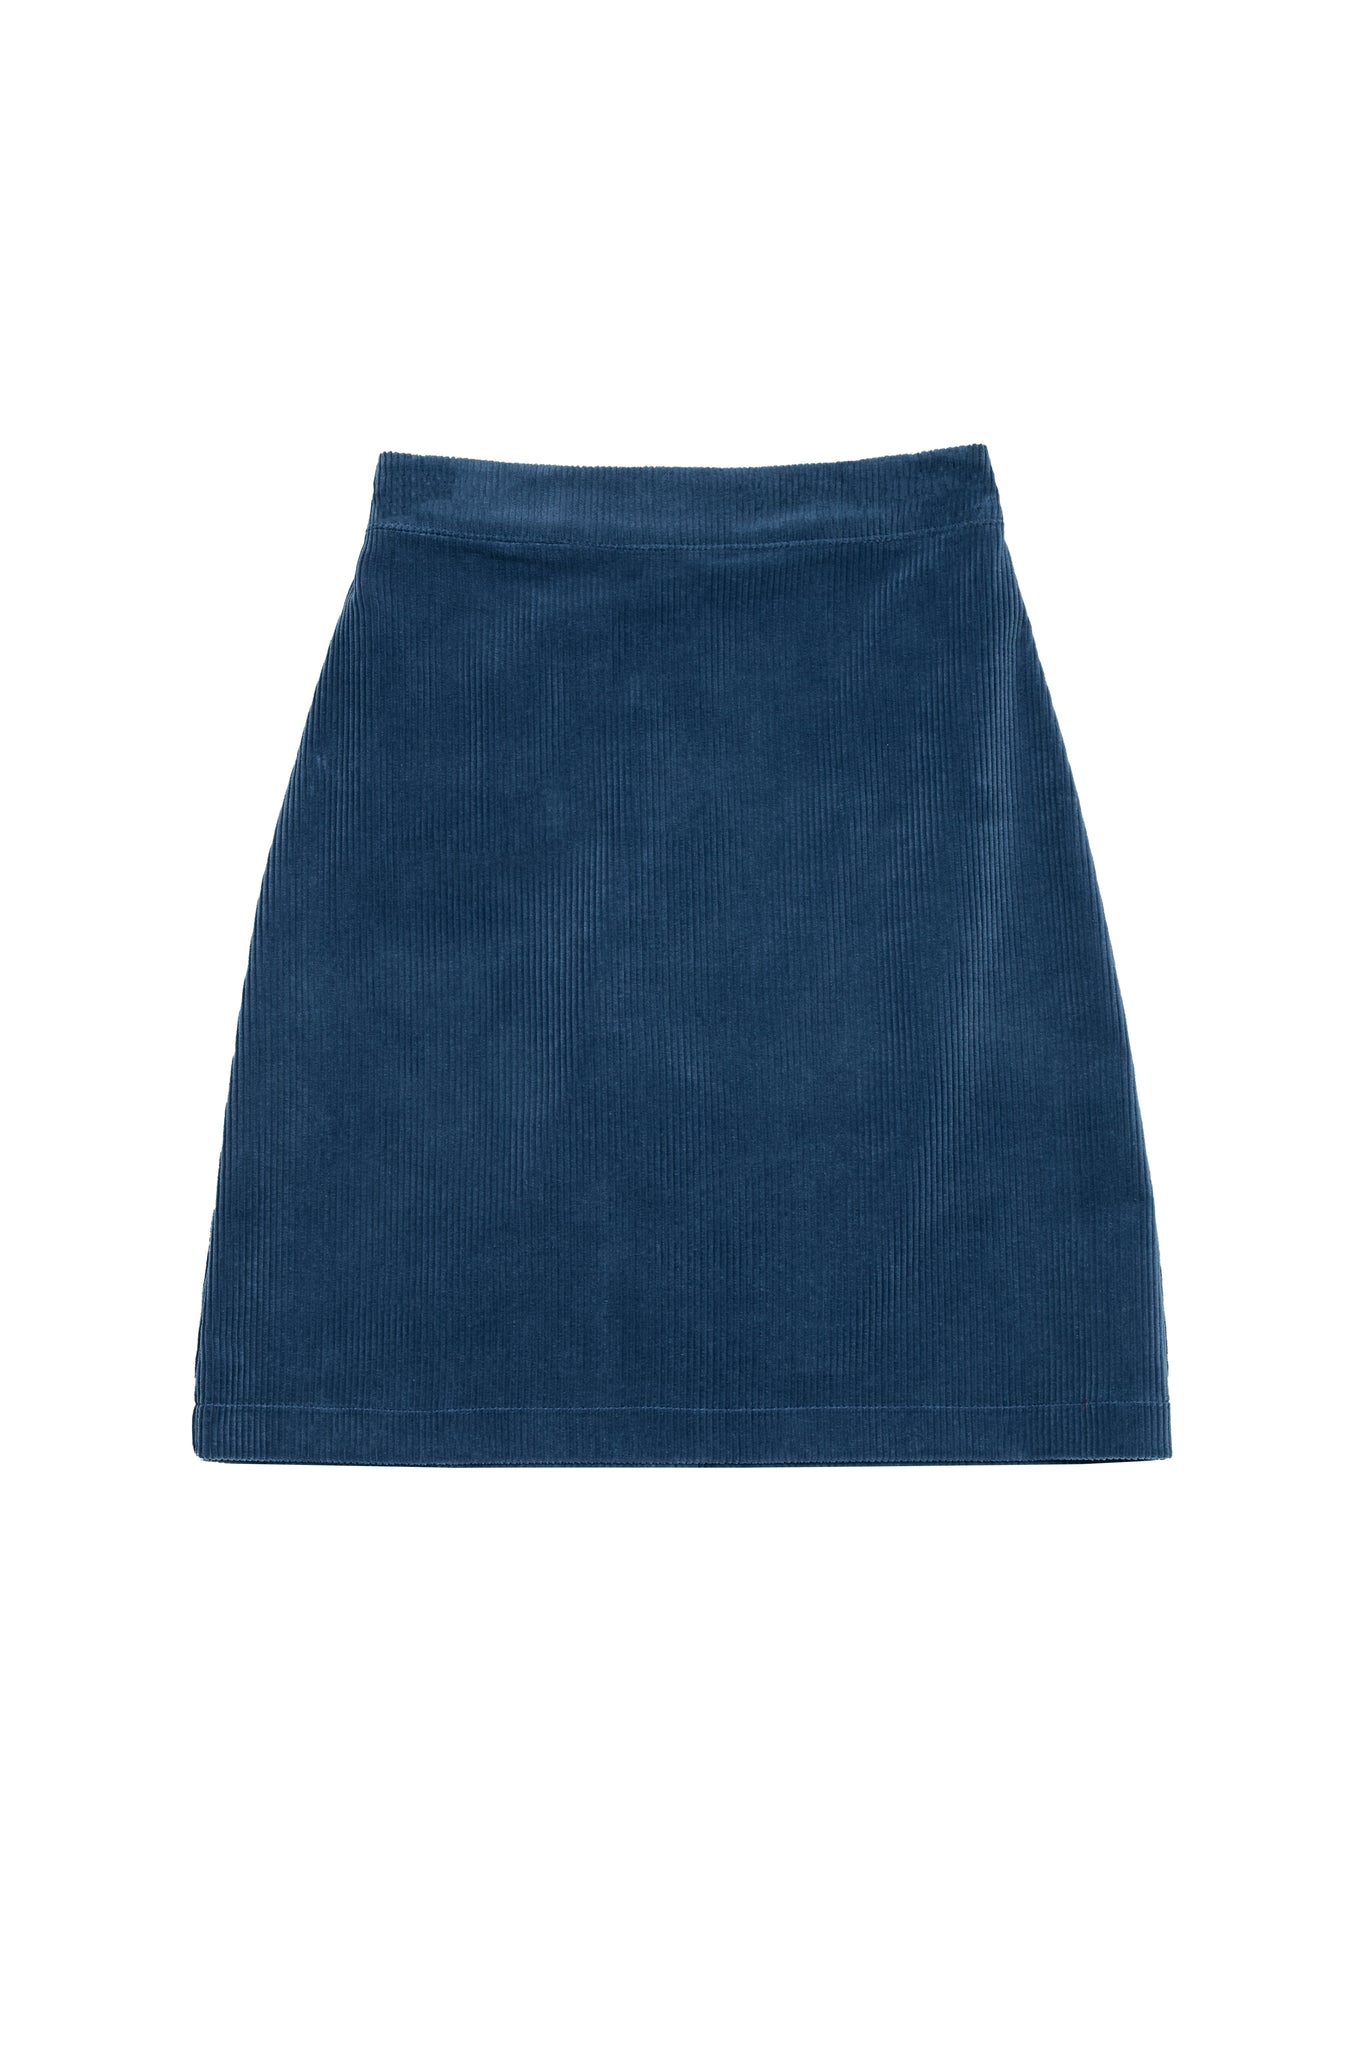 Odette Cord Skirt